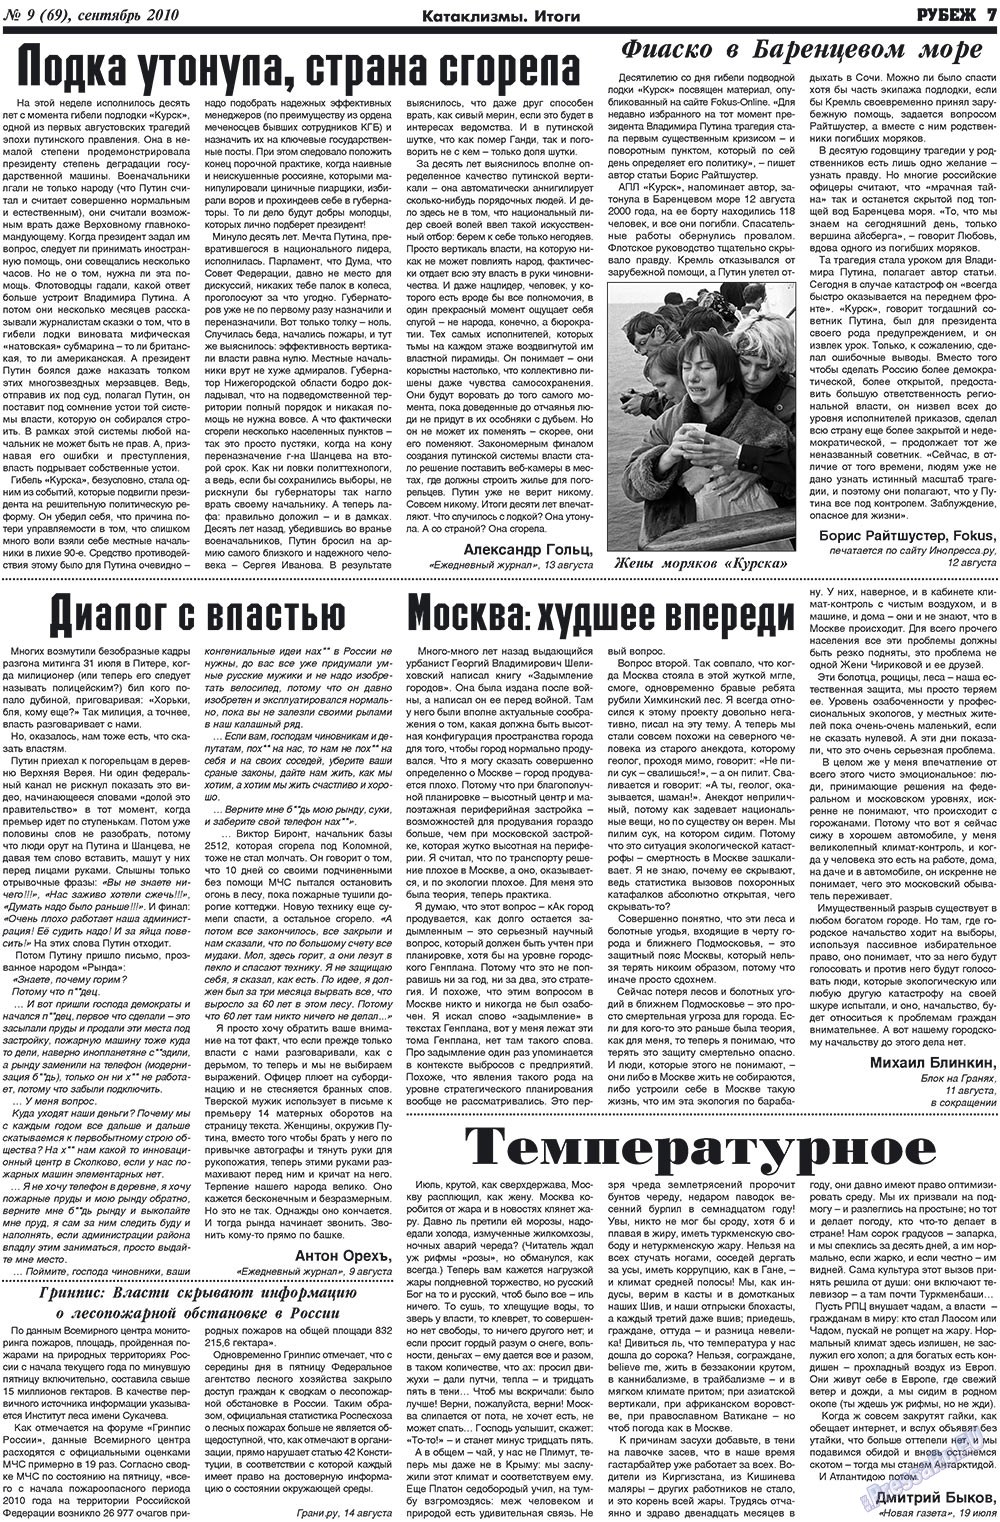 Рубеж (газета). 2010 год, номер 9, стр. 7